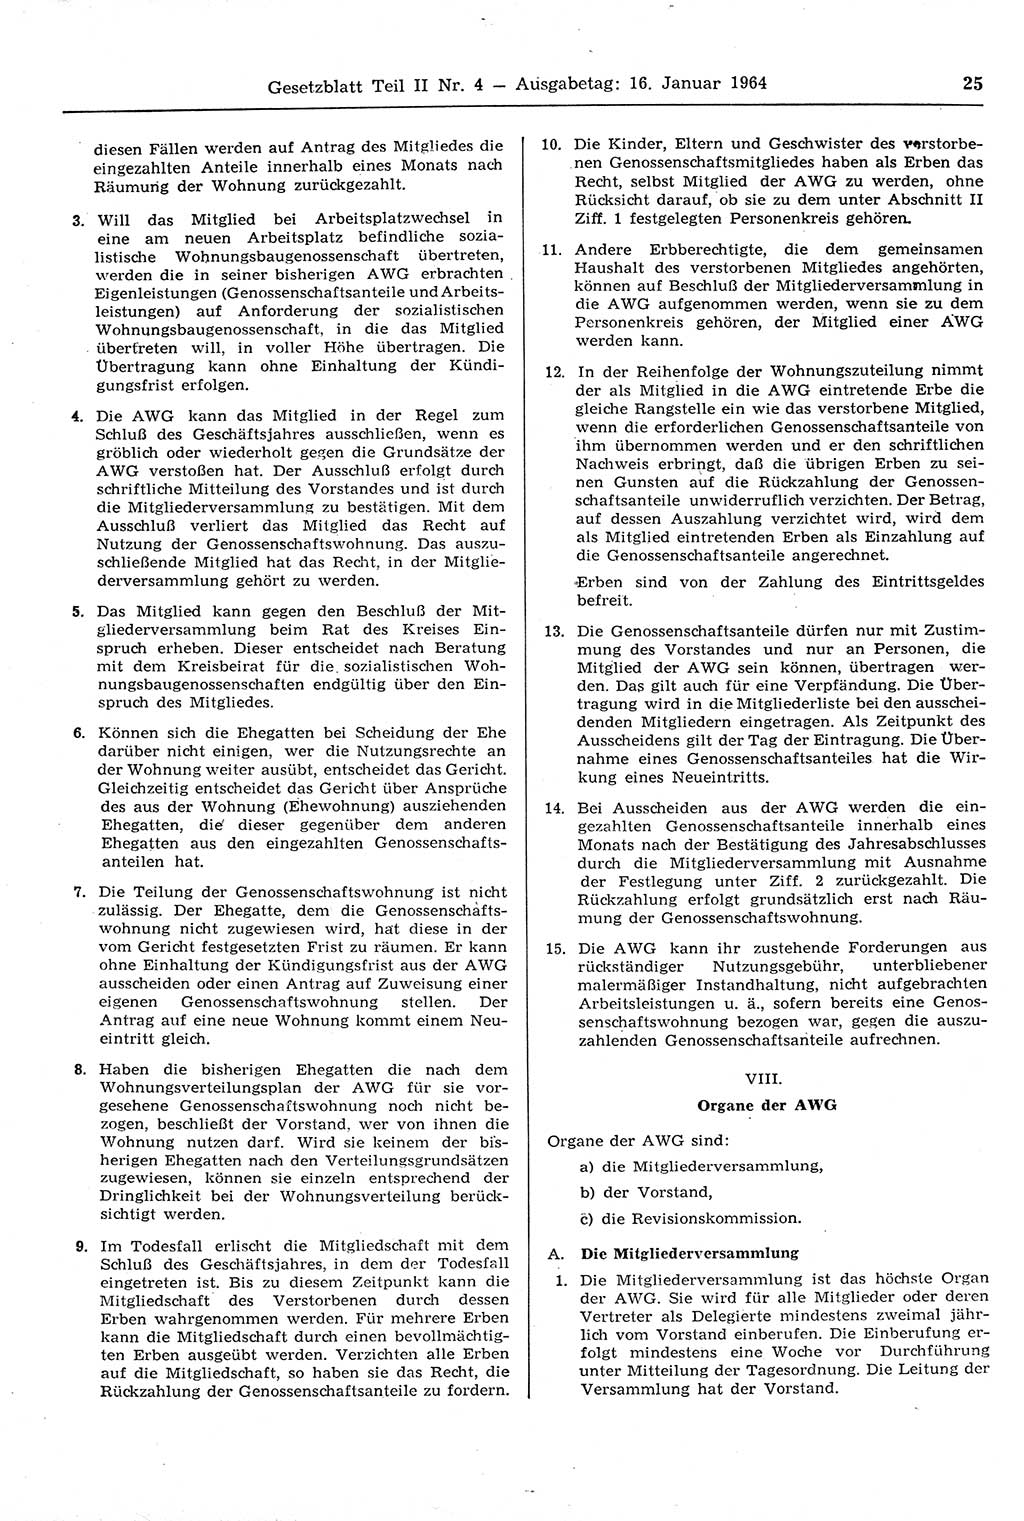 Gesetzblatt (GBl.) der Deutschen Demokratischen Republik (DDR) Teil ⅠⅠ 1964, Seite 25 (GBl. DDR ⅠⅠ 1964, S. 25)